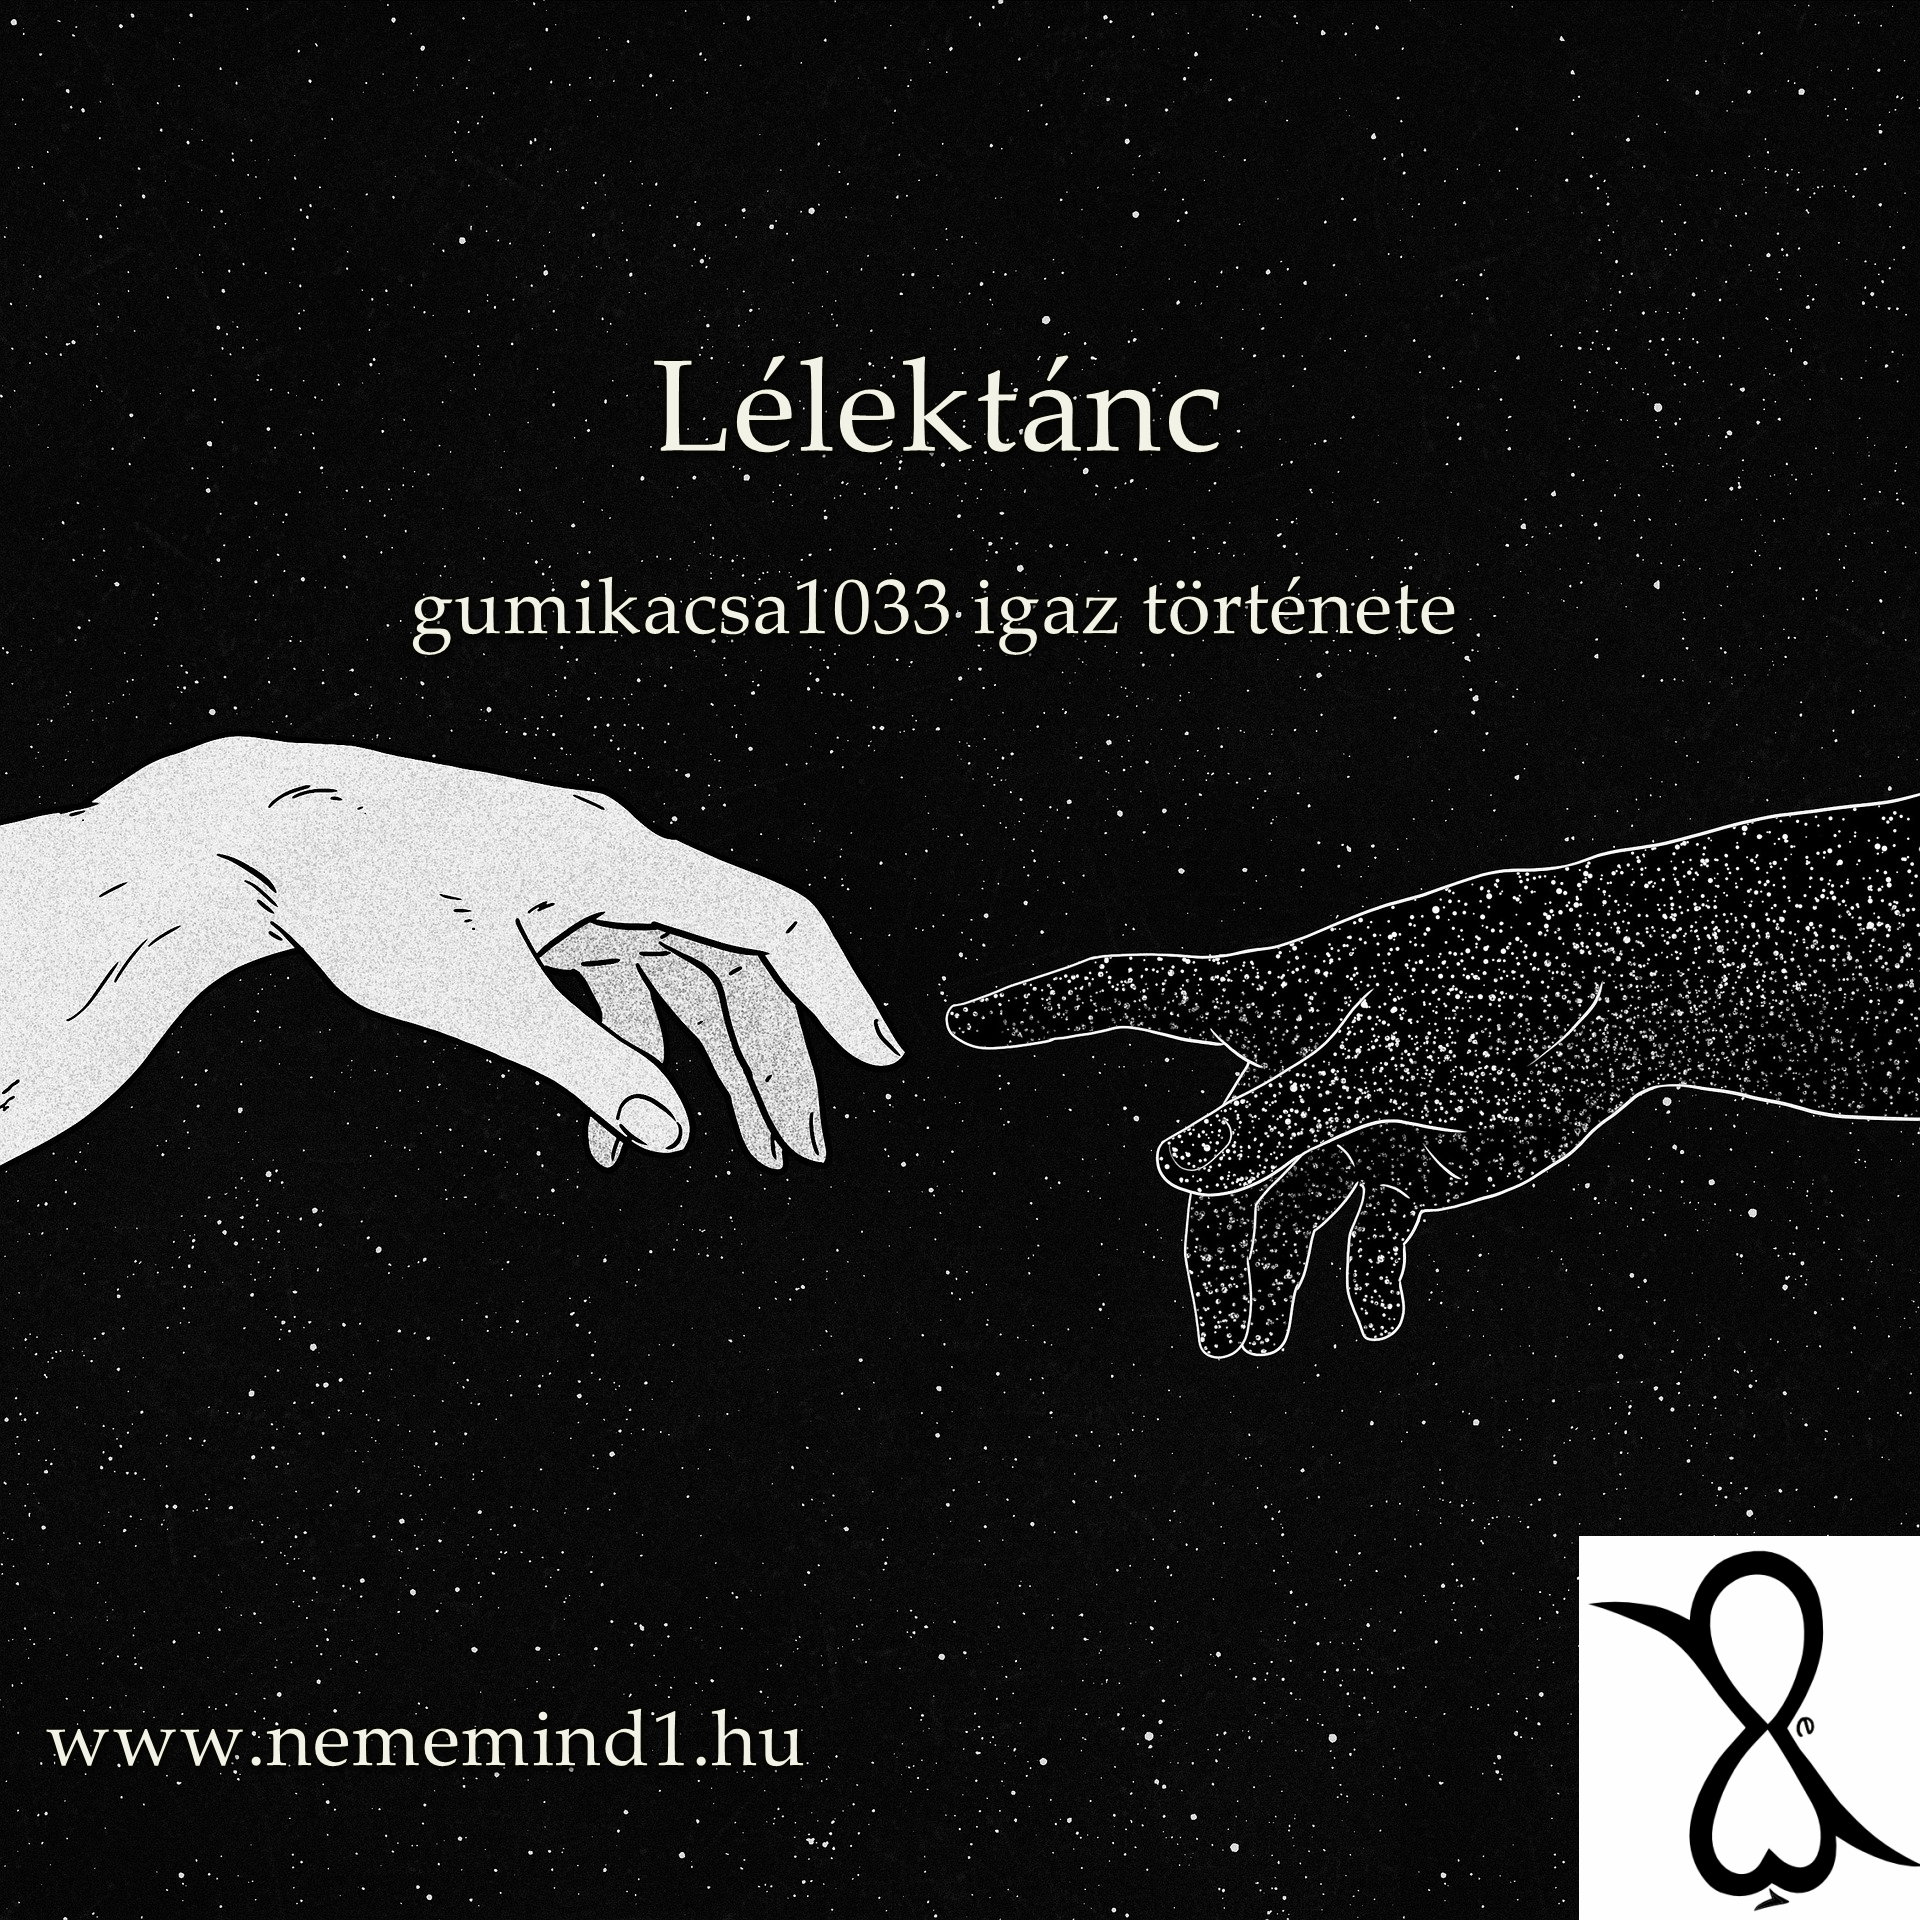 You are currently viewing Lélektánc (gumikacsa1033 fiktív története)